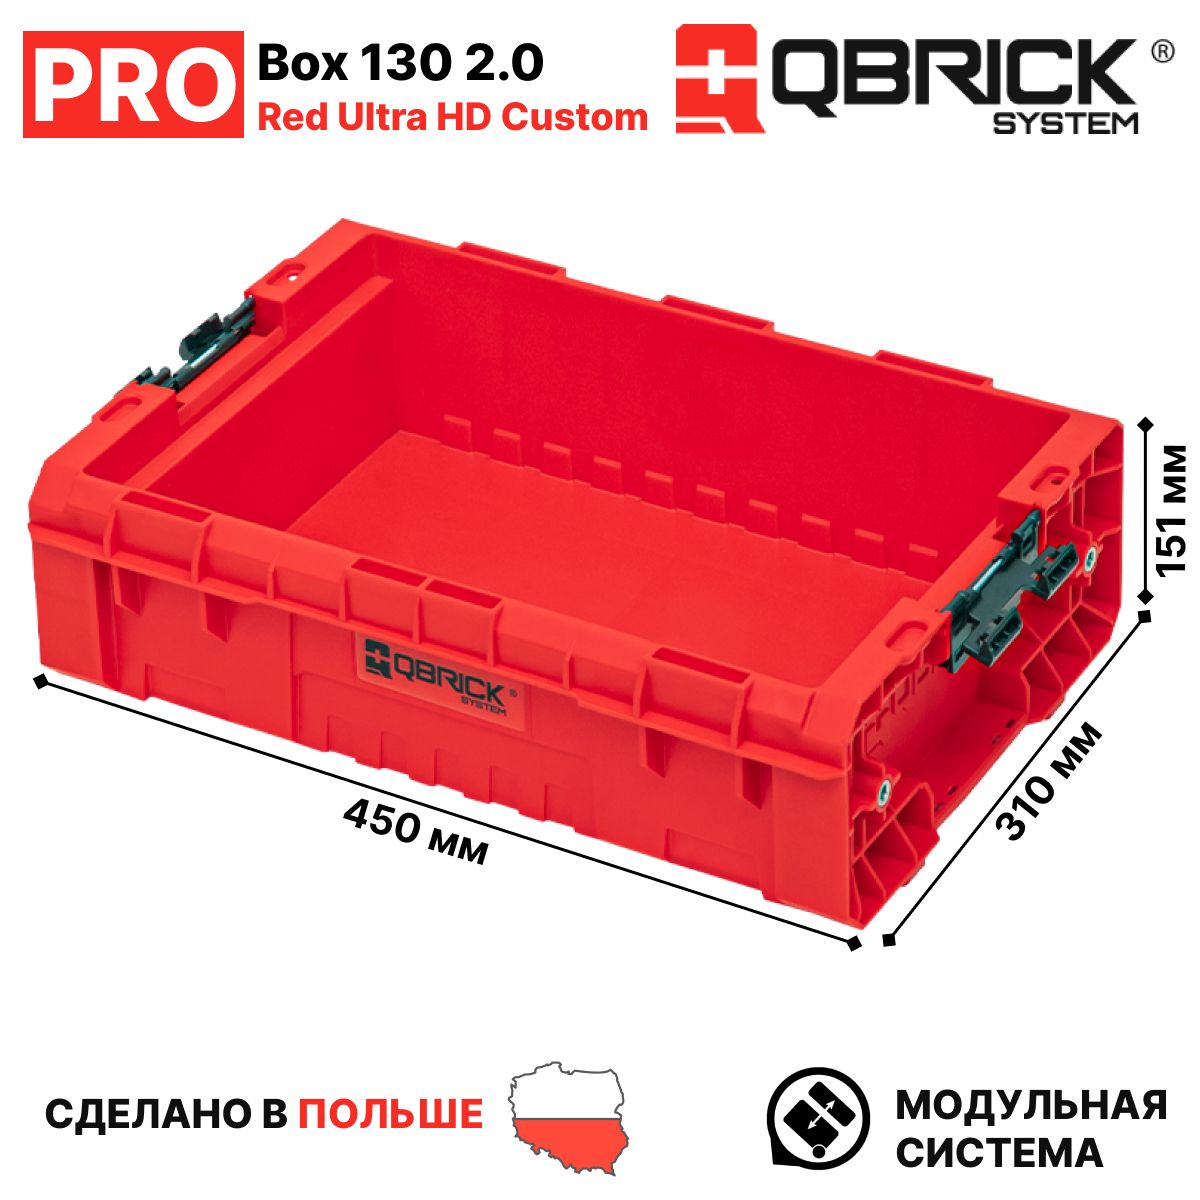 ЯщикдляинструментовQBRICKSYSTEMPROBox1302.0REDUltraHDCustom,красный